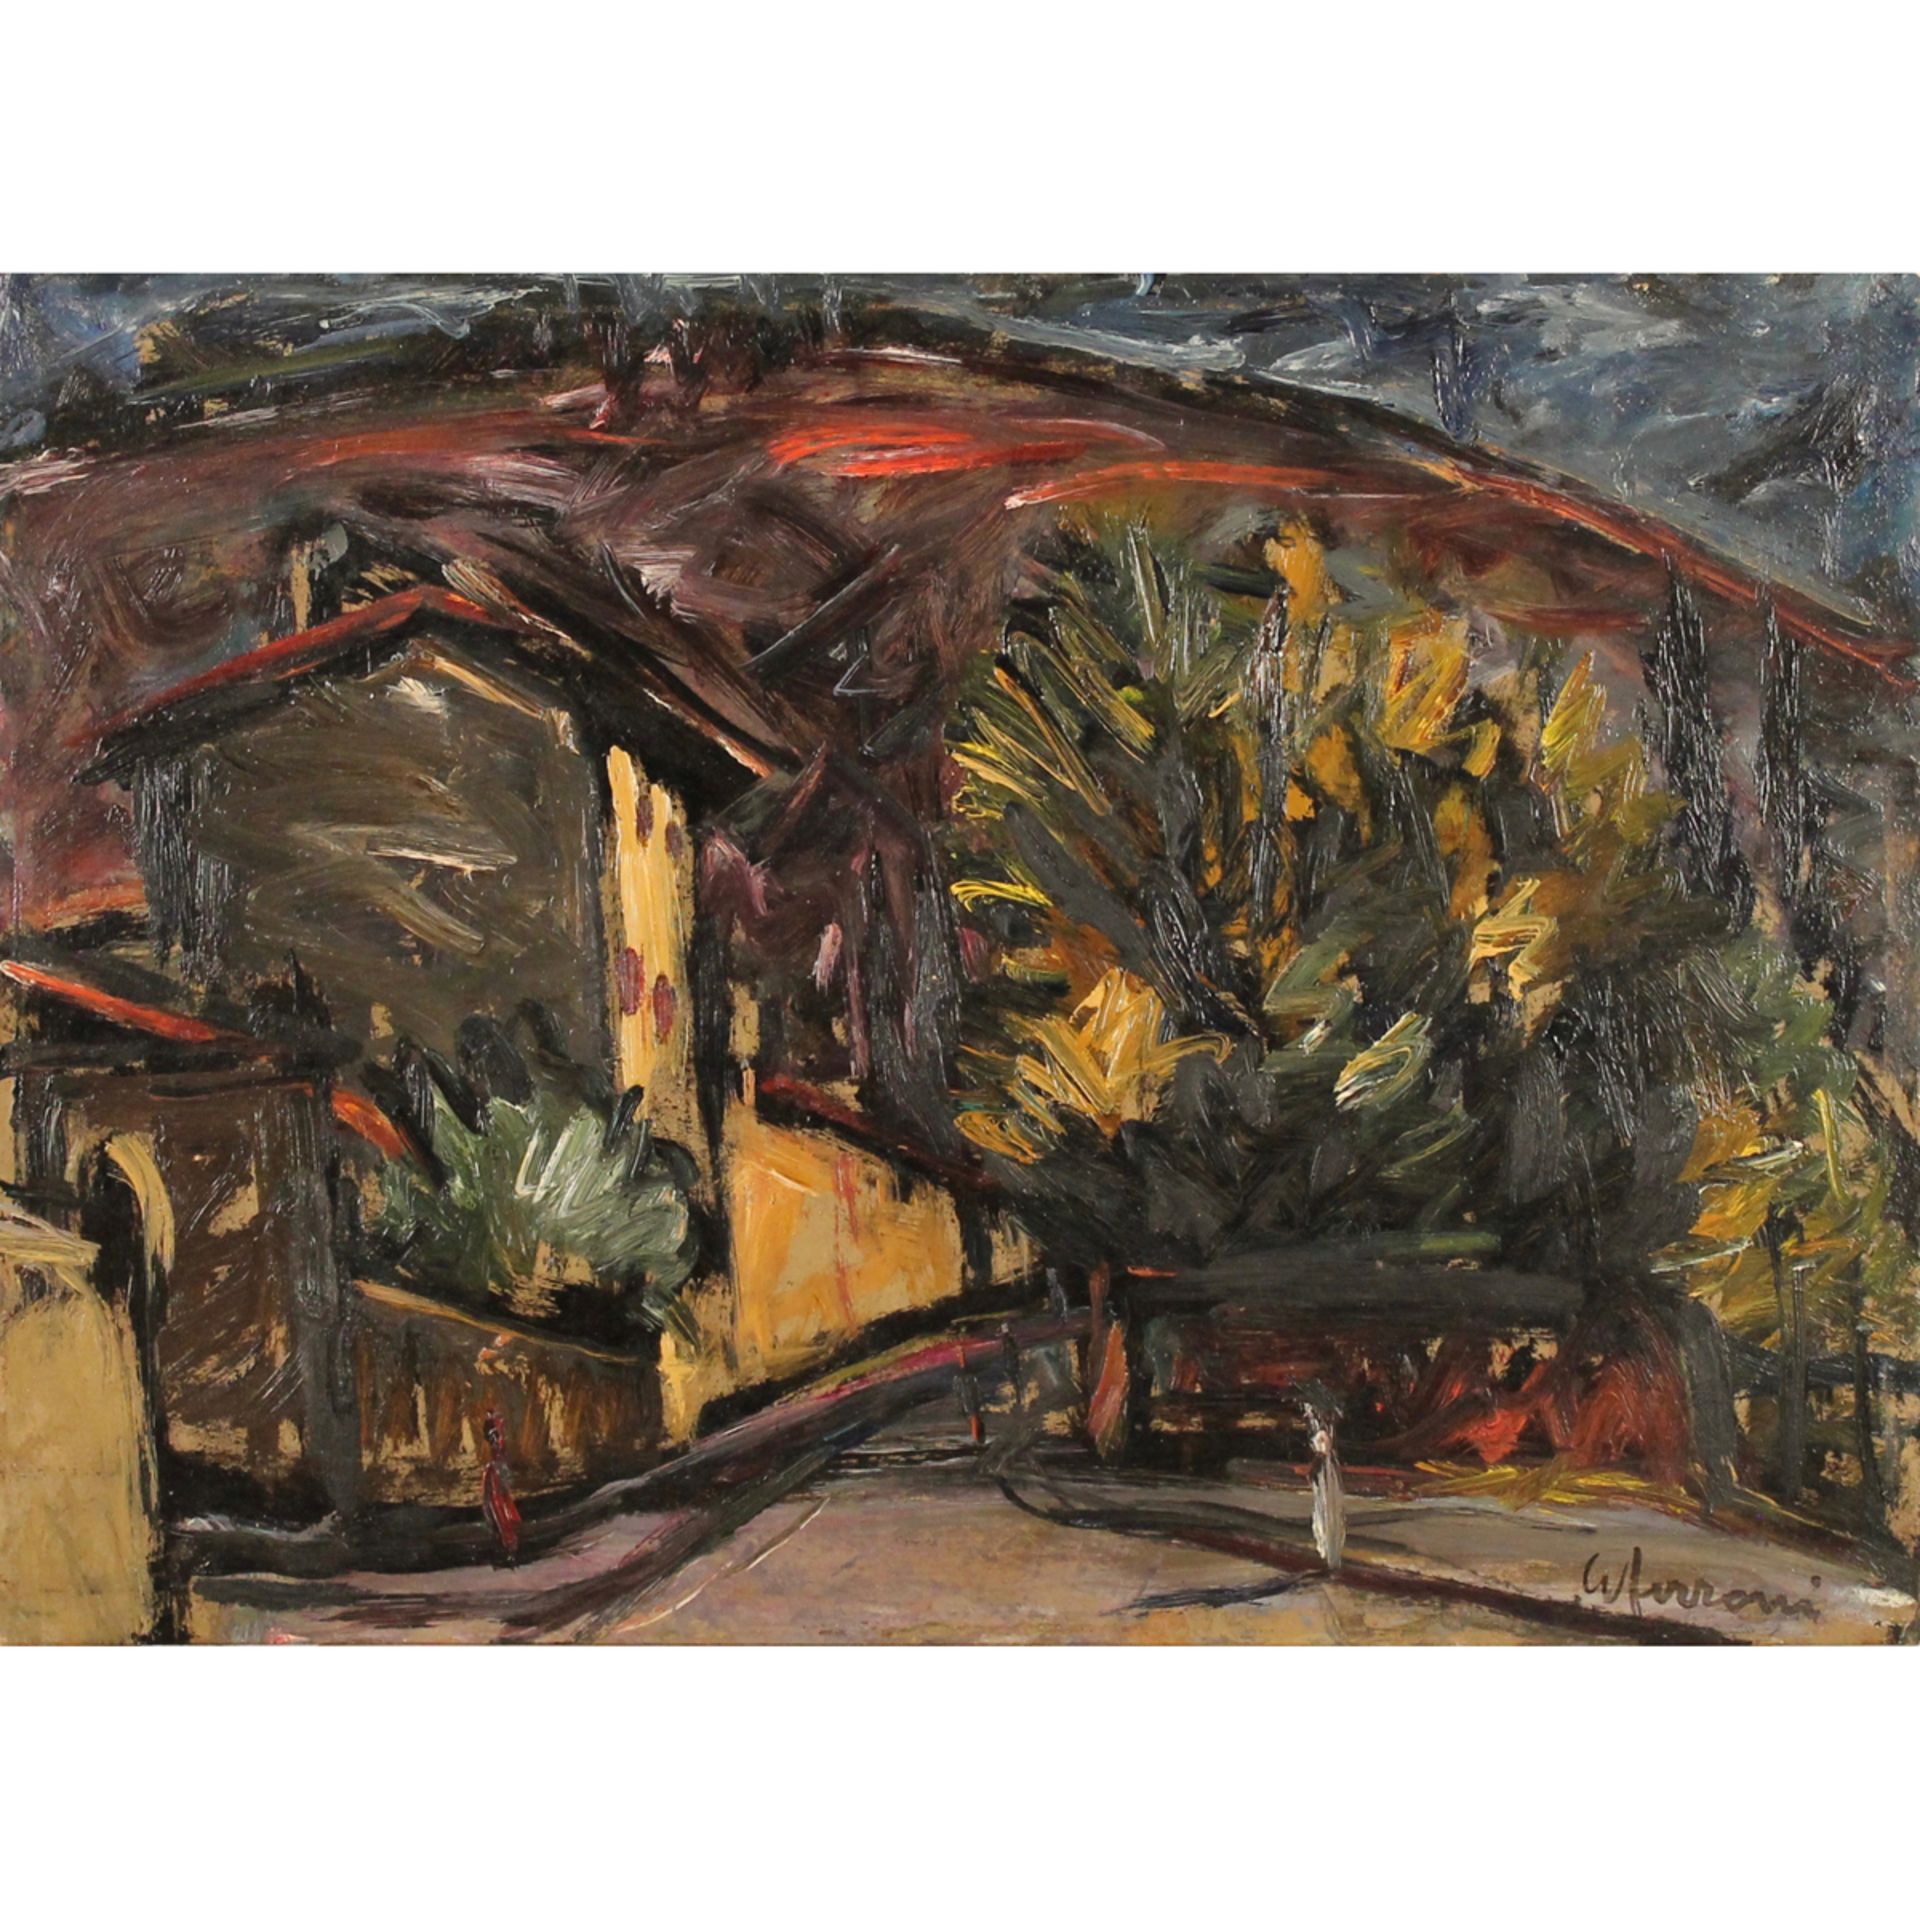 GUIDO FERRONI (1888/1979) “Paesaggi” - "Landscapes"